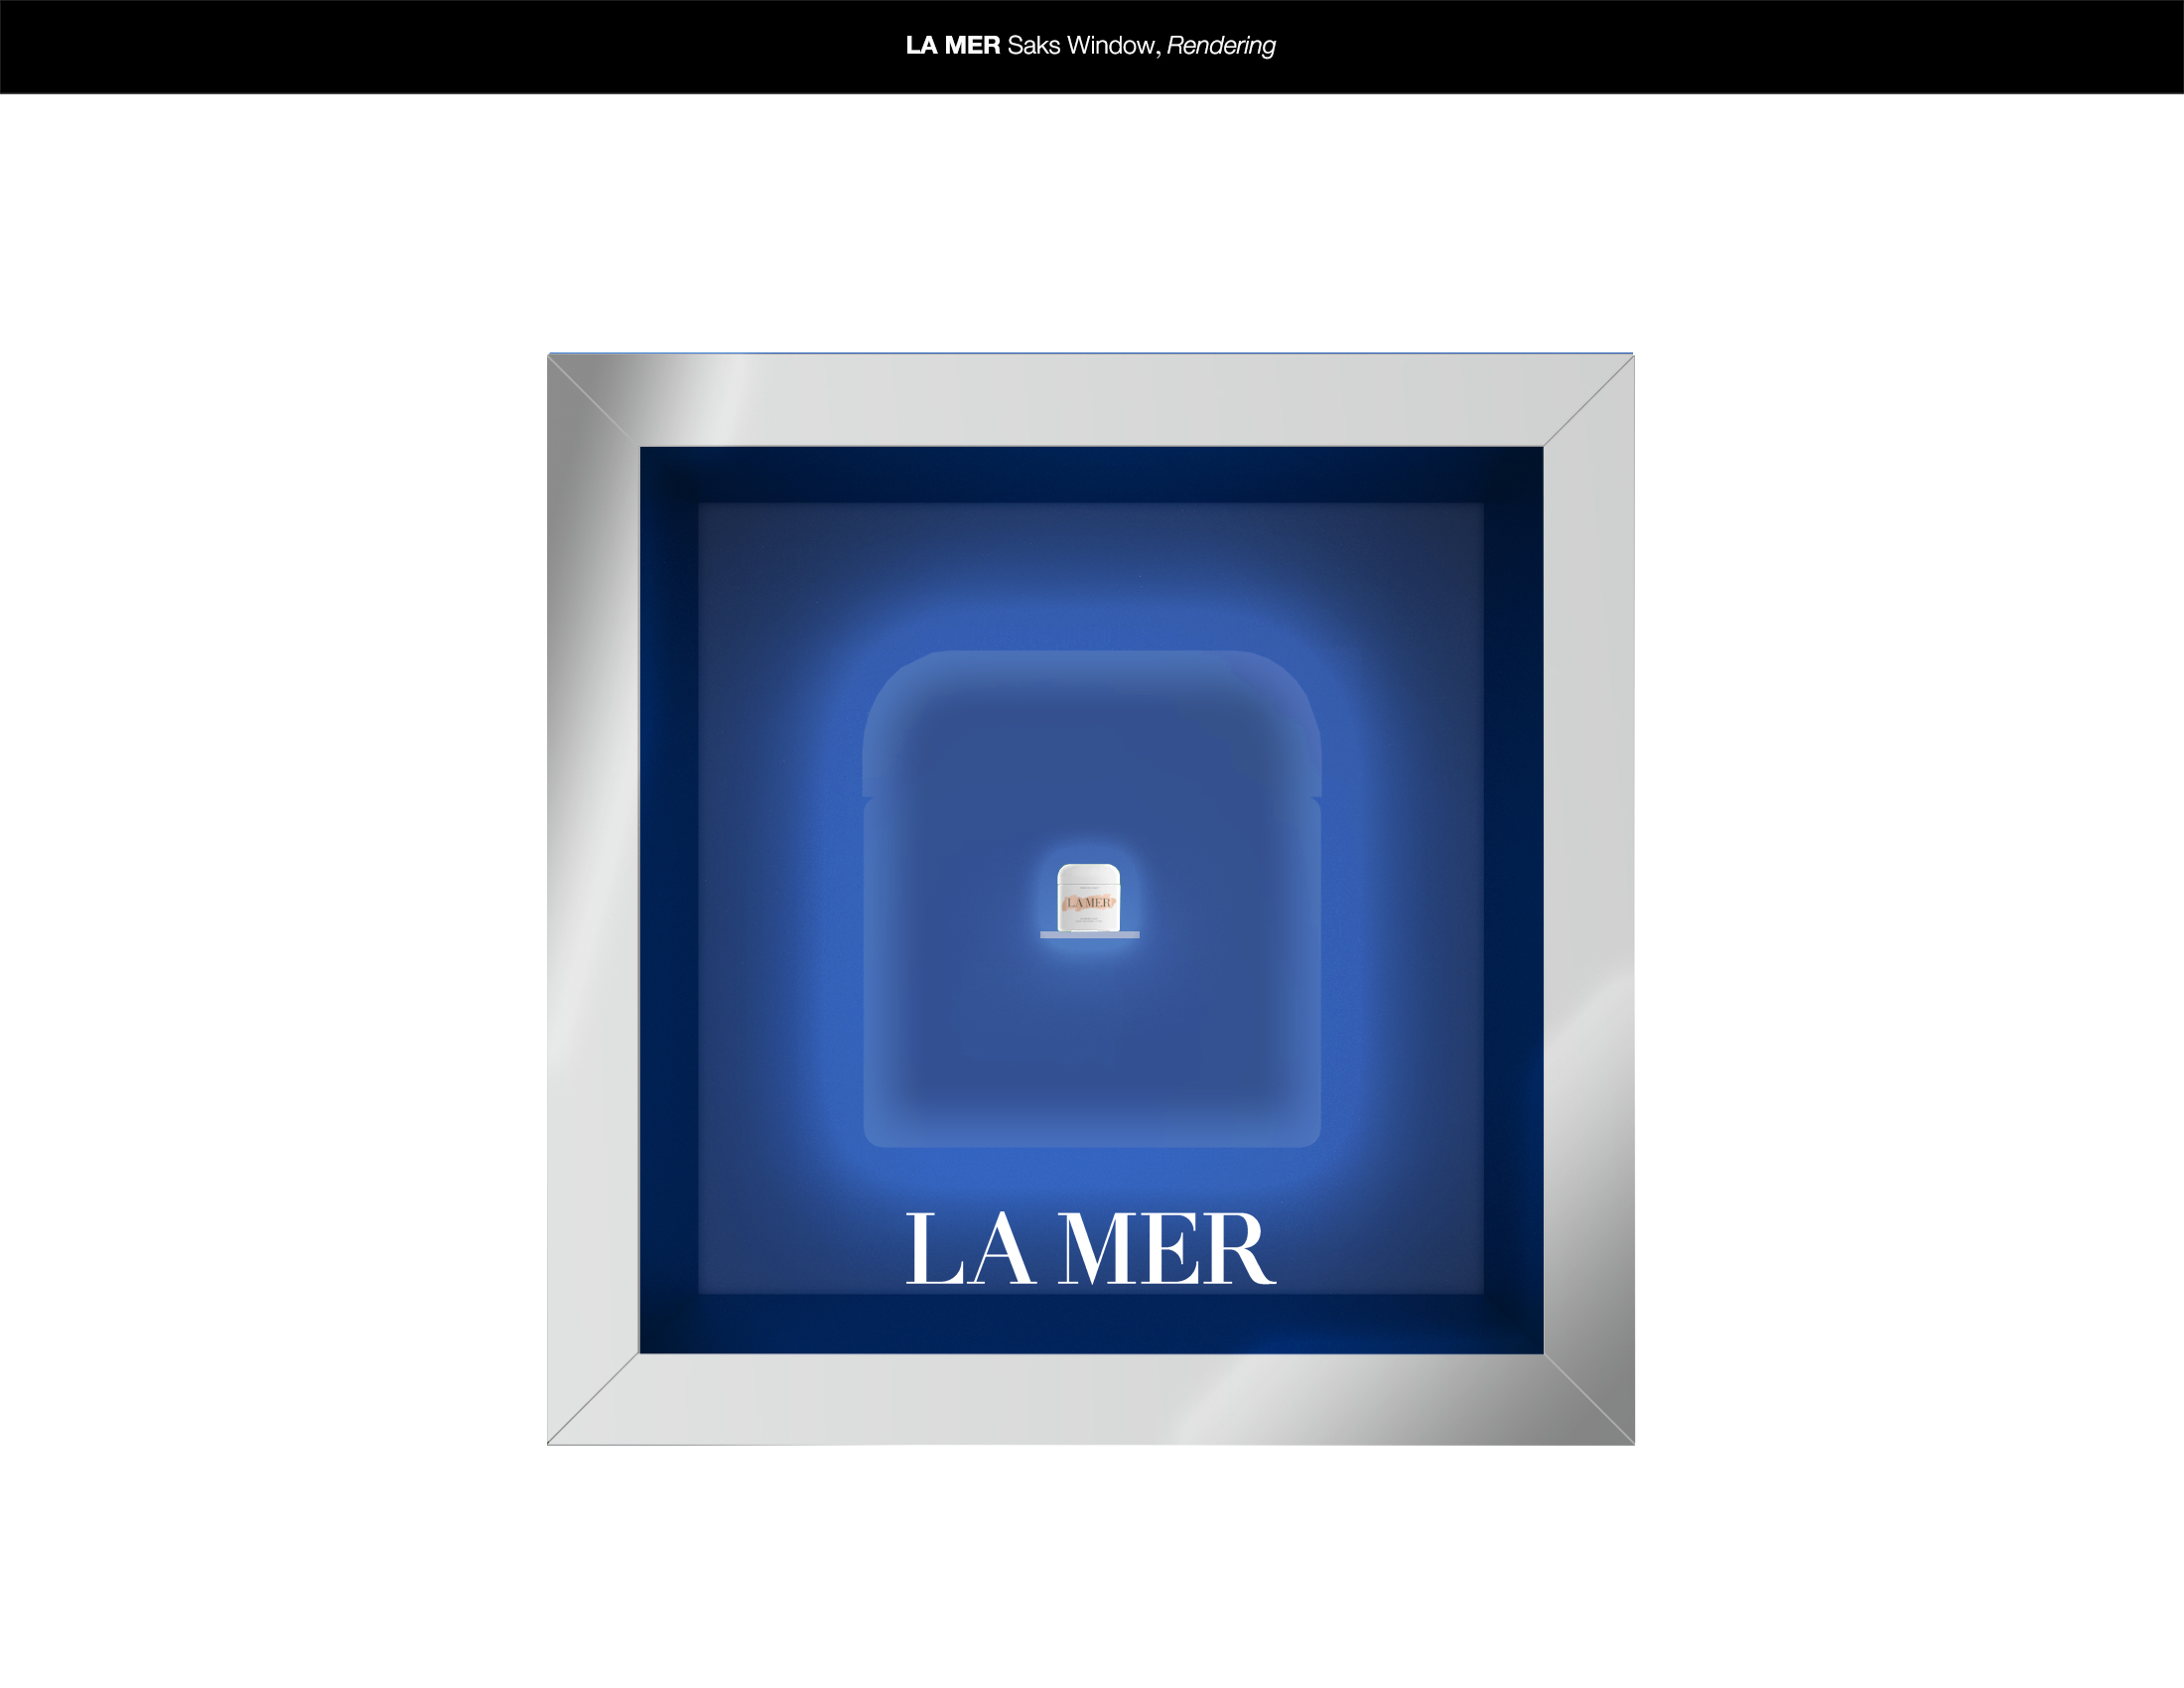 LaMer-3 Update